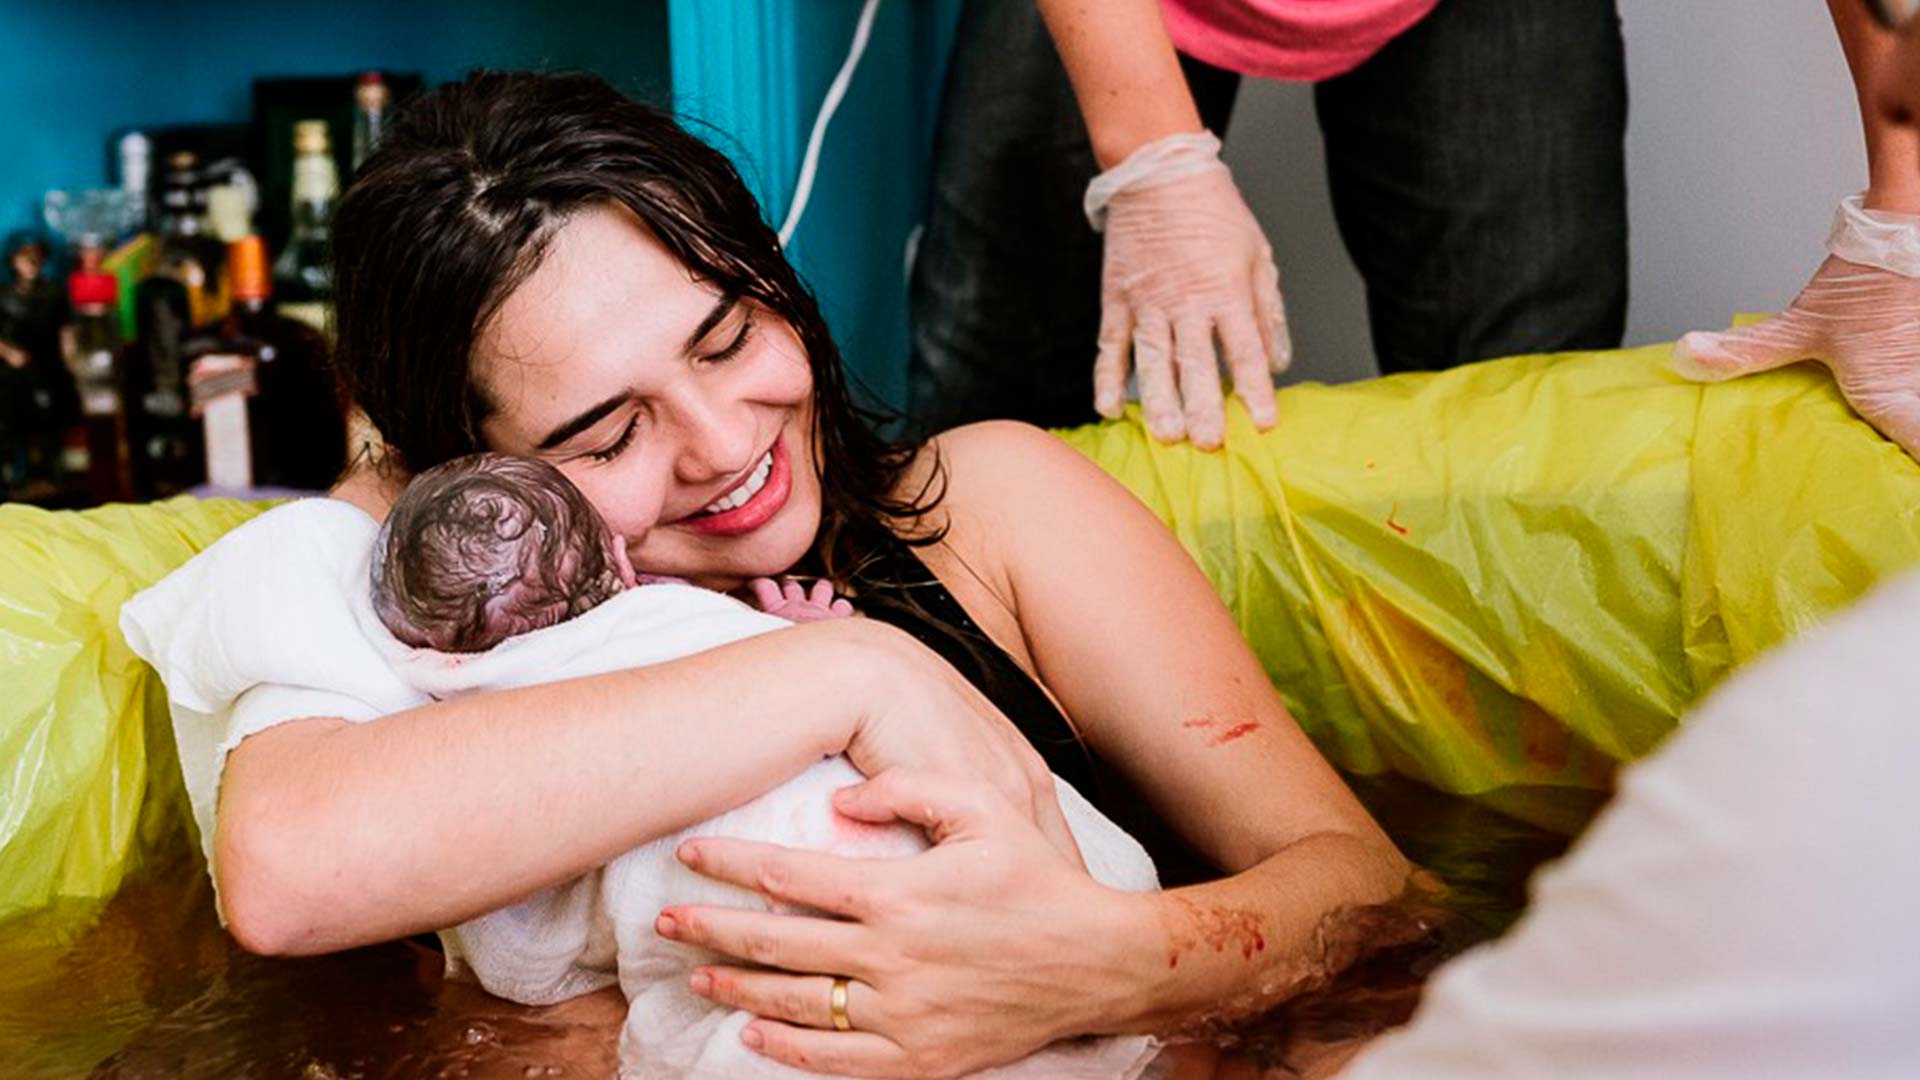 Fotografia de parto: Mãe com filho recém-nascido nos braços, em uma banheira com água.